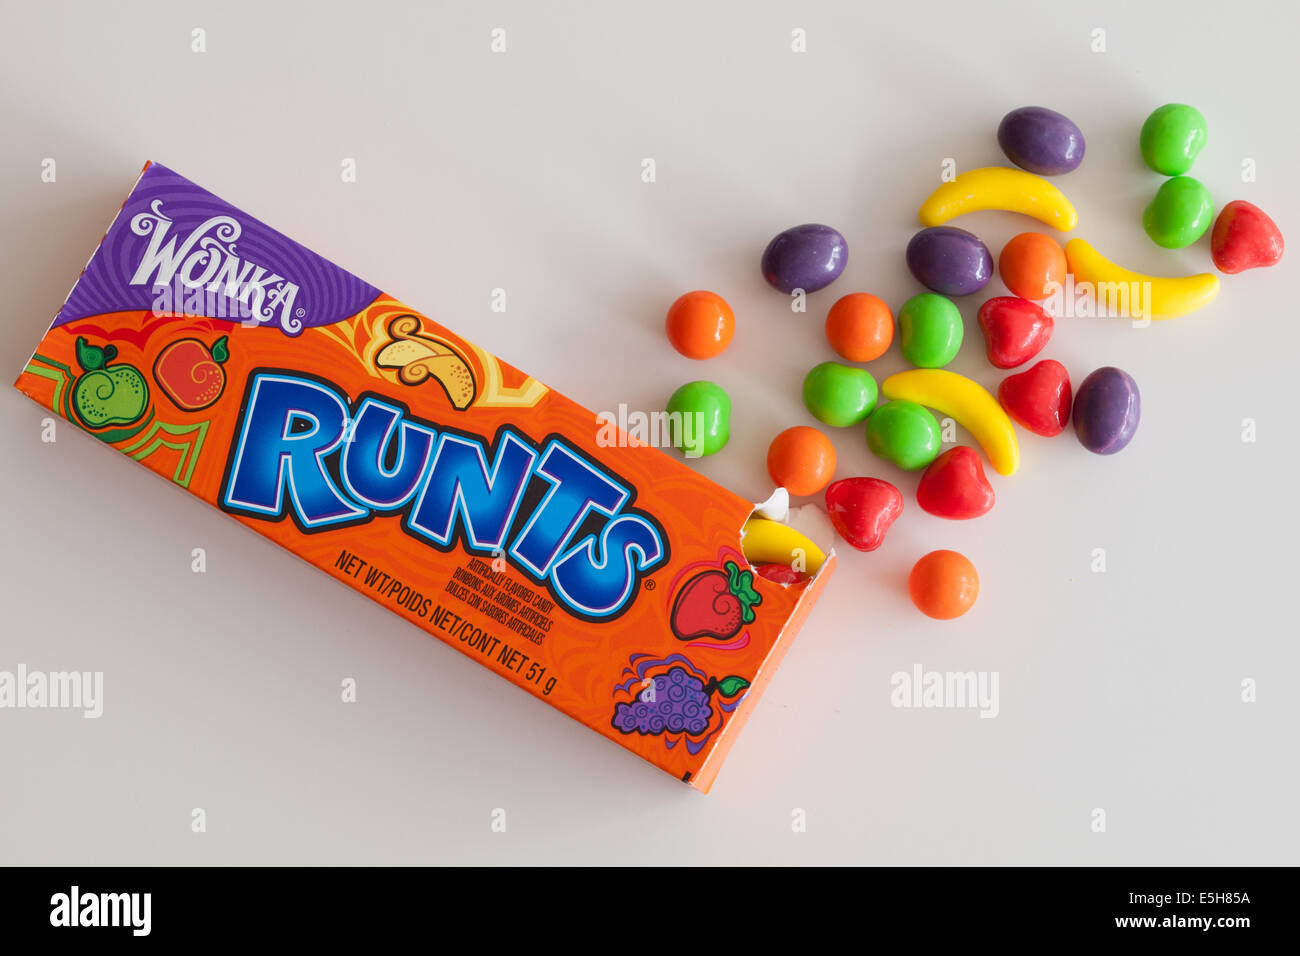 Une boîte d'avortons (ou de fruits) avortons candy. Ces bonbons durs sont vendus par Nestlé dans le cadre de l'entreprise marque Bonbons Willy Wonka. Banque D'Images